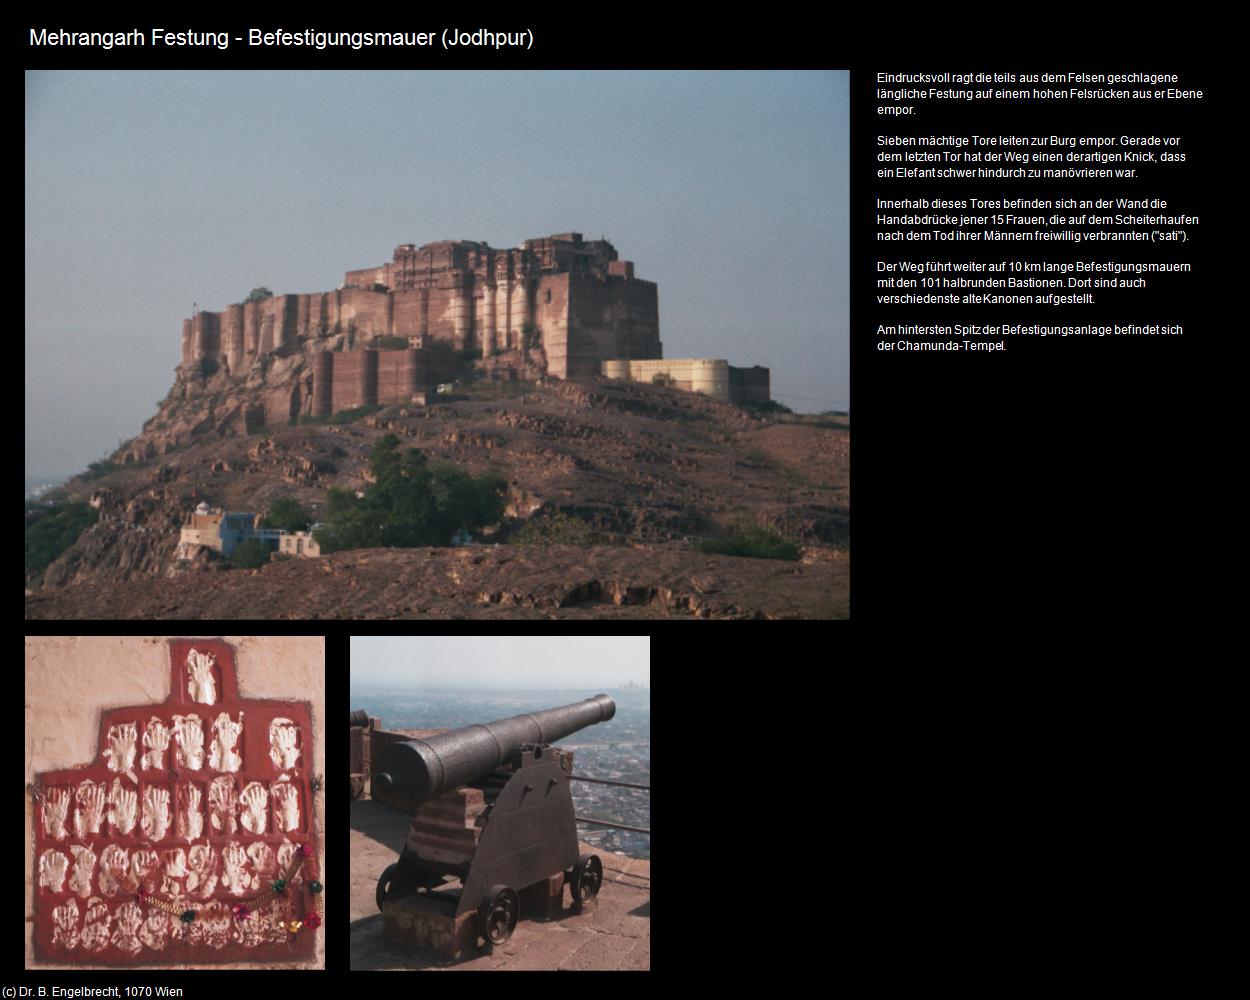 Mehrangarh Festung-Befestigungsmauer (Jodhpur) in Rajasthan - das Land der Könige